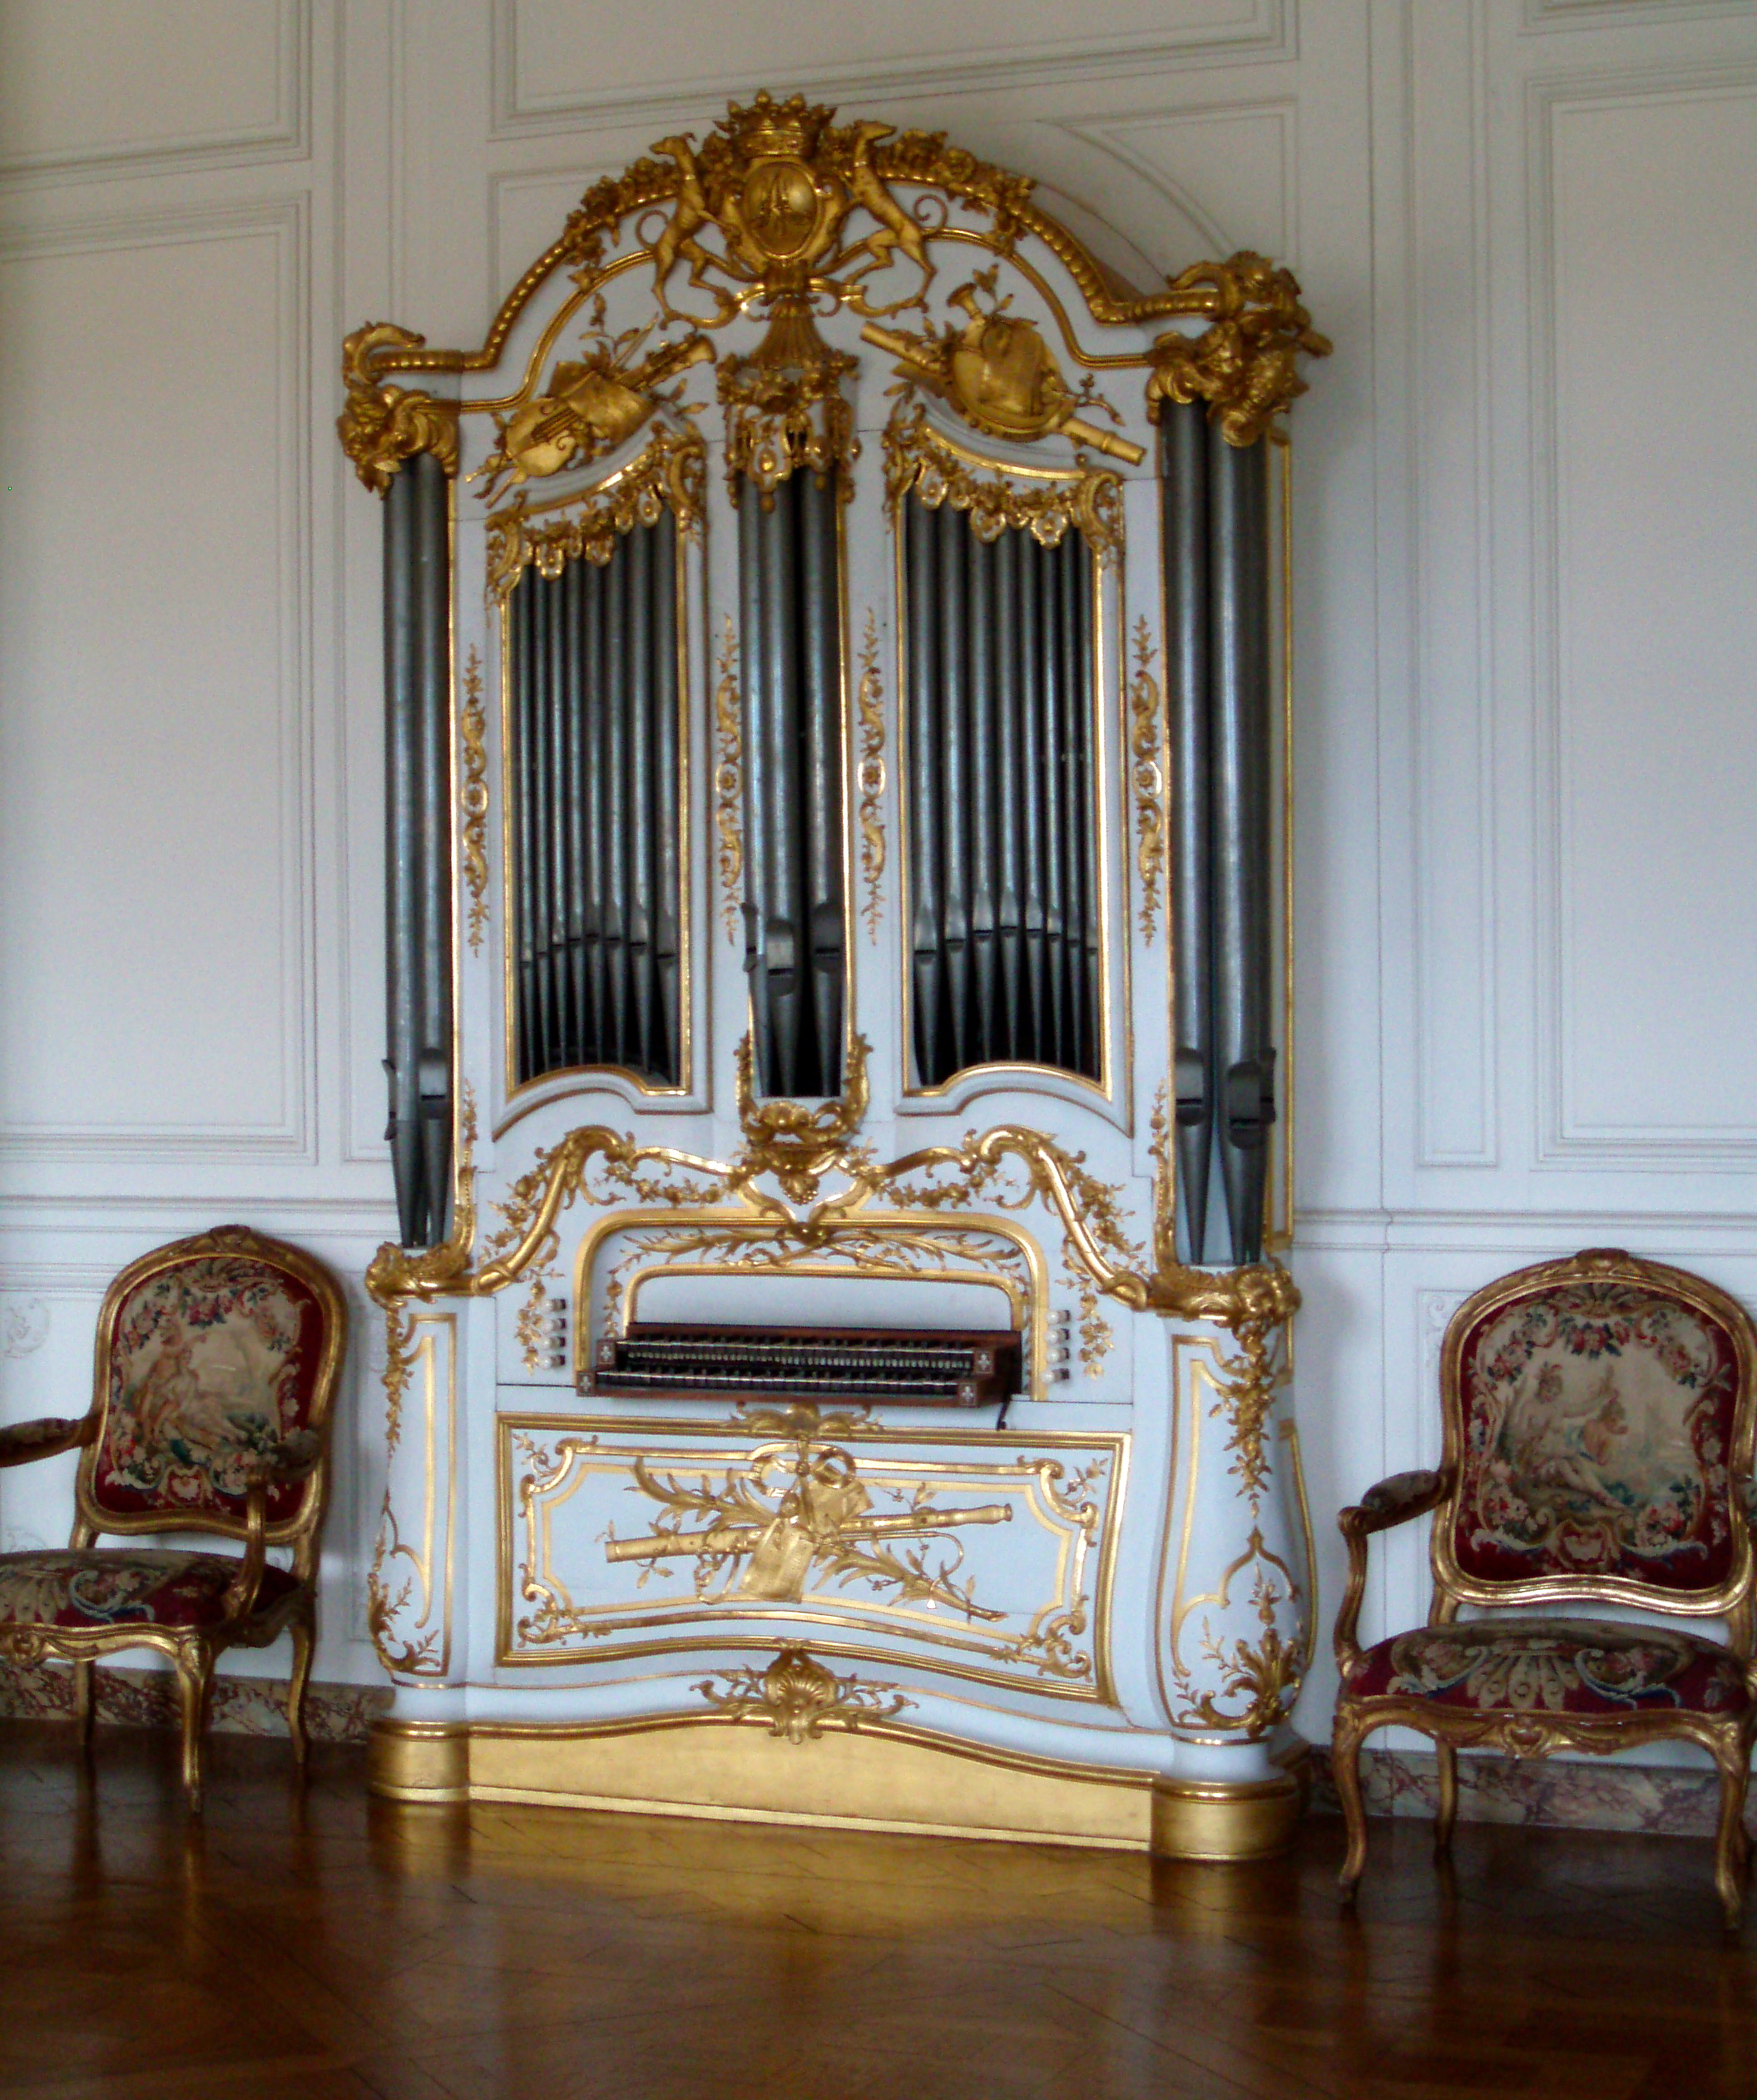 Órgano del Palacio de Versalles